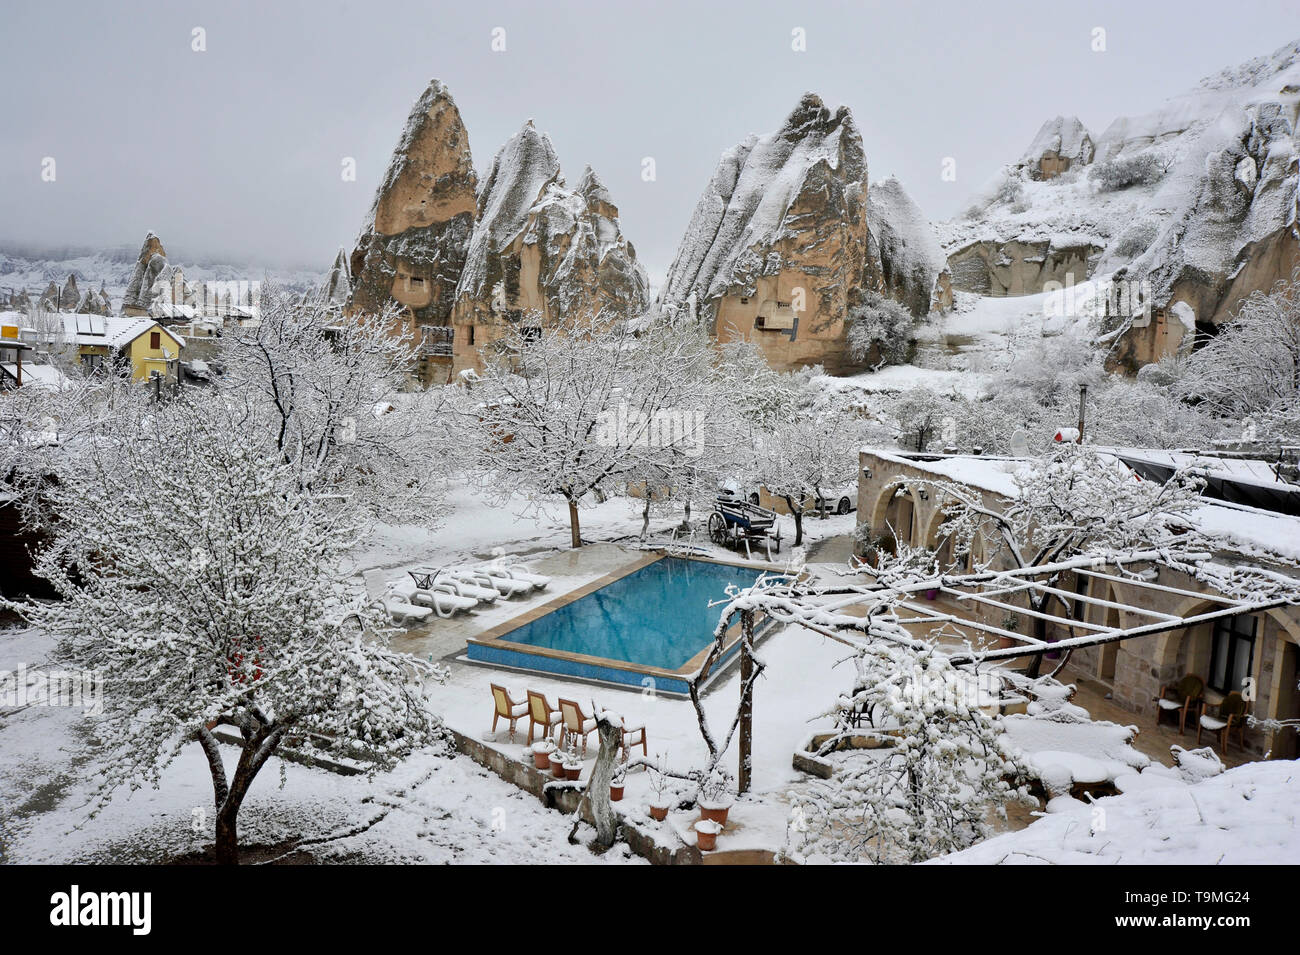 Piscine et formations de pierres naturelles inhabituelles avec neige à Göreme dans la région de Cappadoce en Turquie Banque D'Images